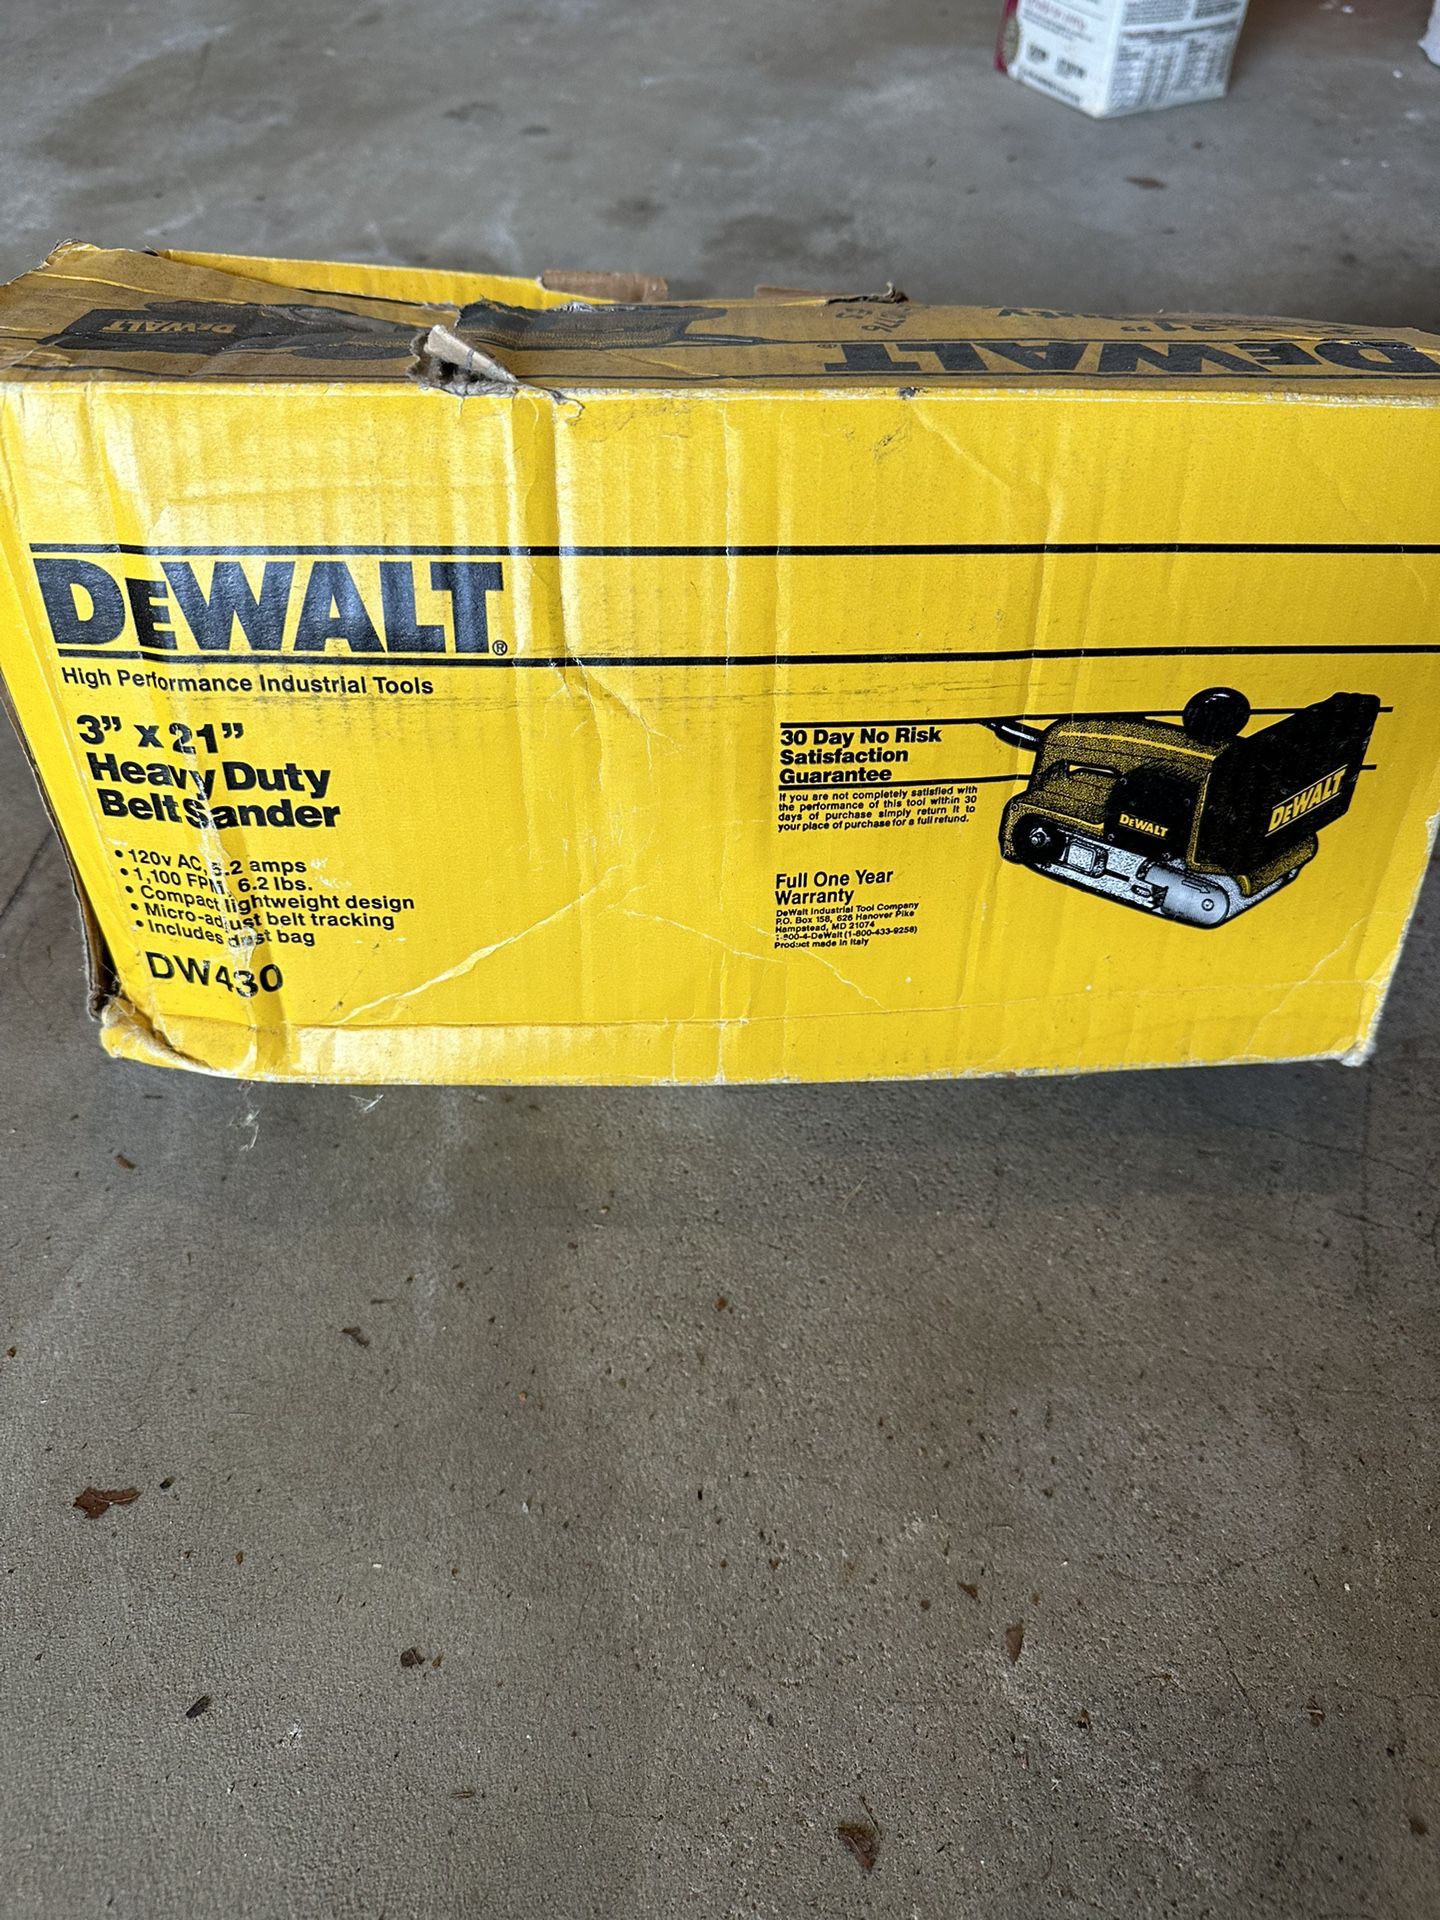 DeWALT Heavy Duty Belt Sander Dw430